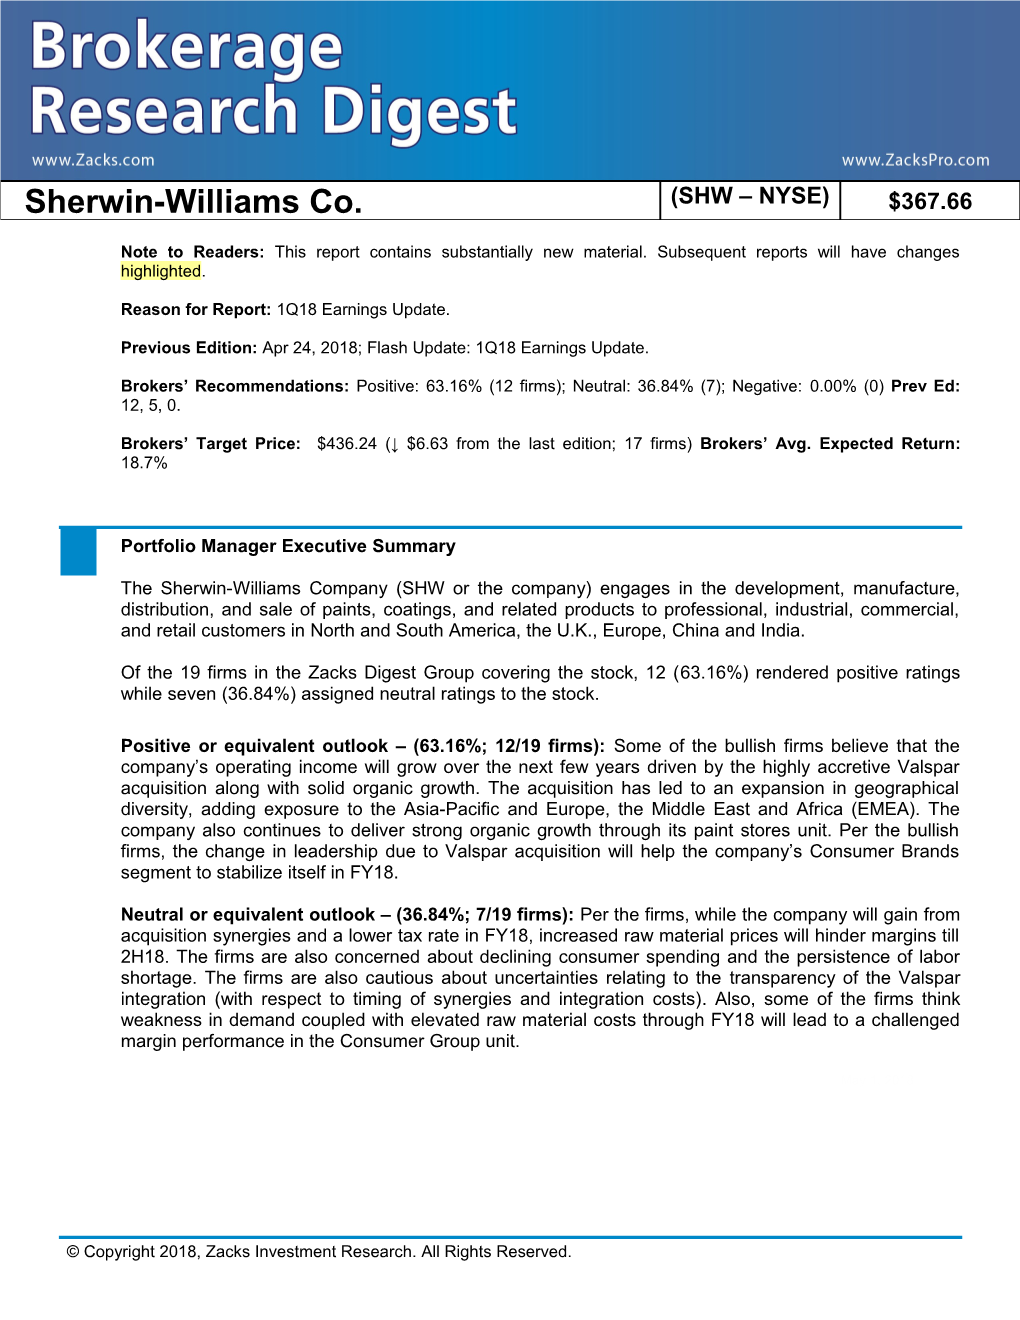 Sherwin-Williams Co